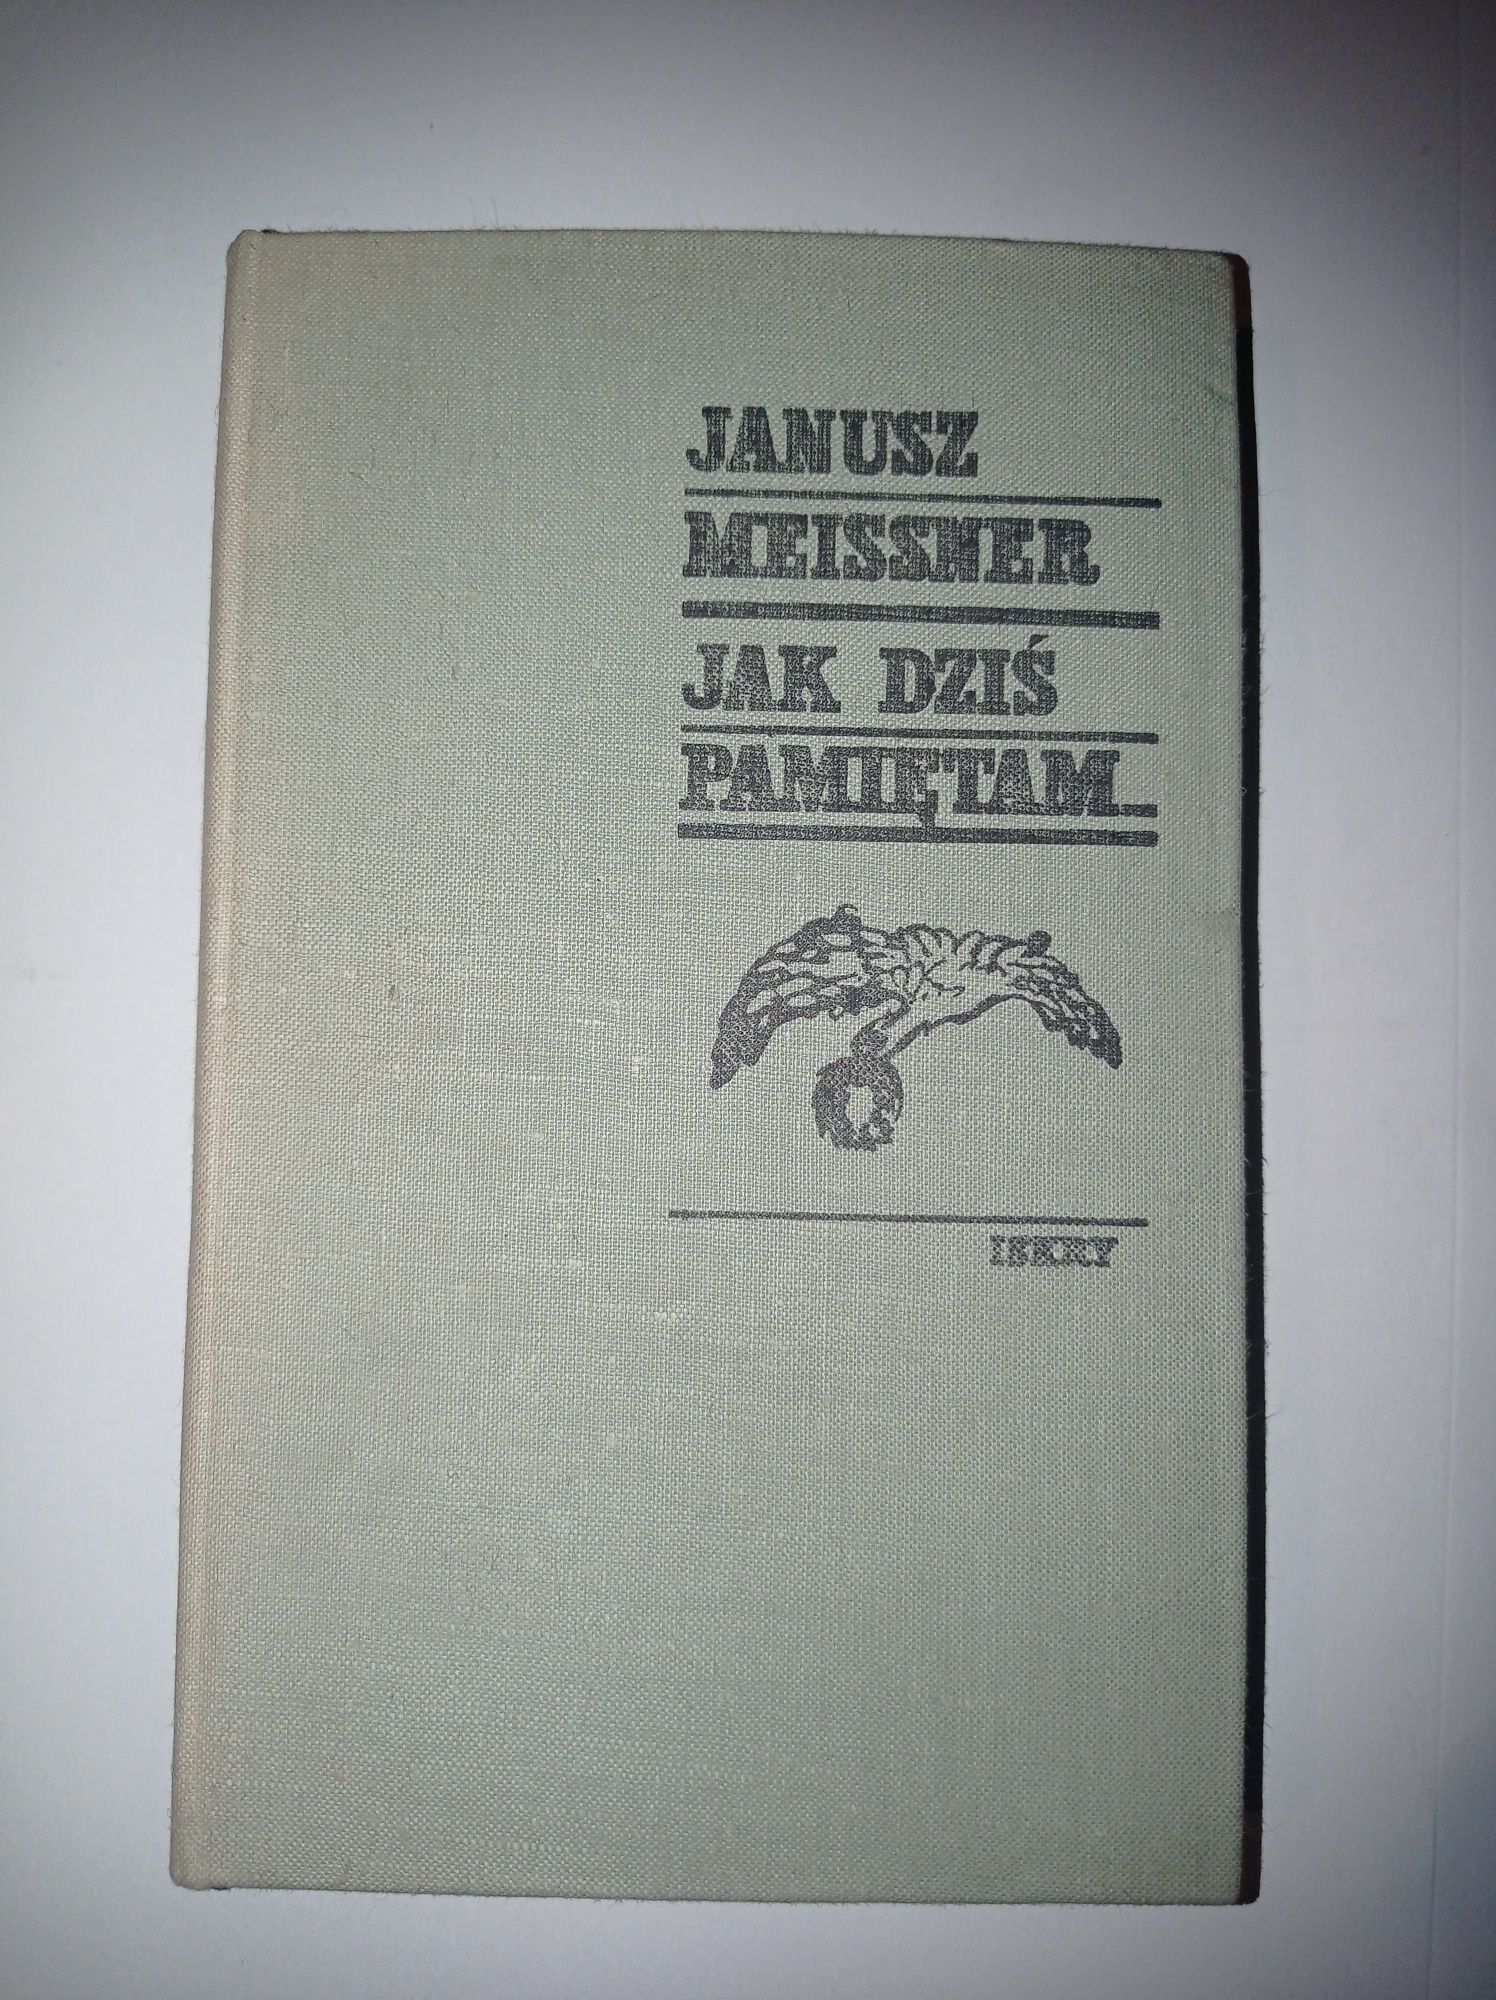 Janusz Meissner "Pamiętam jak dziś"